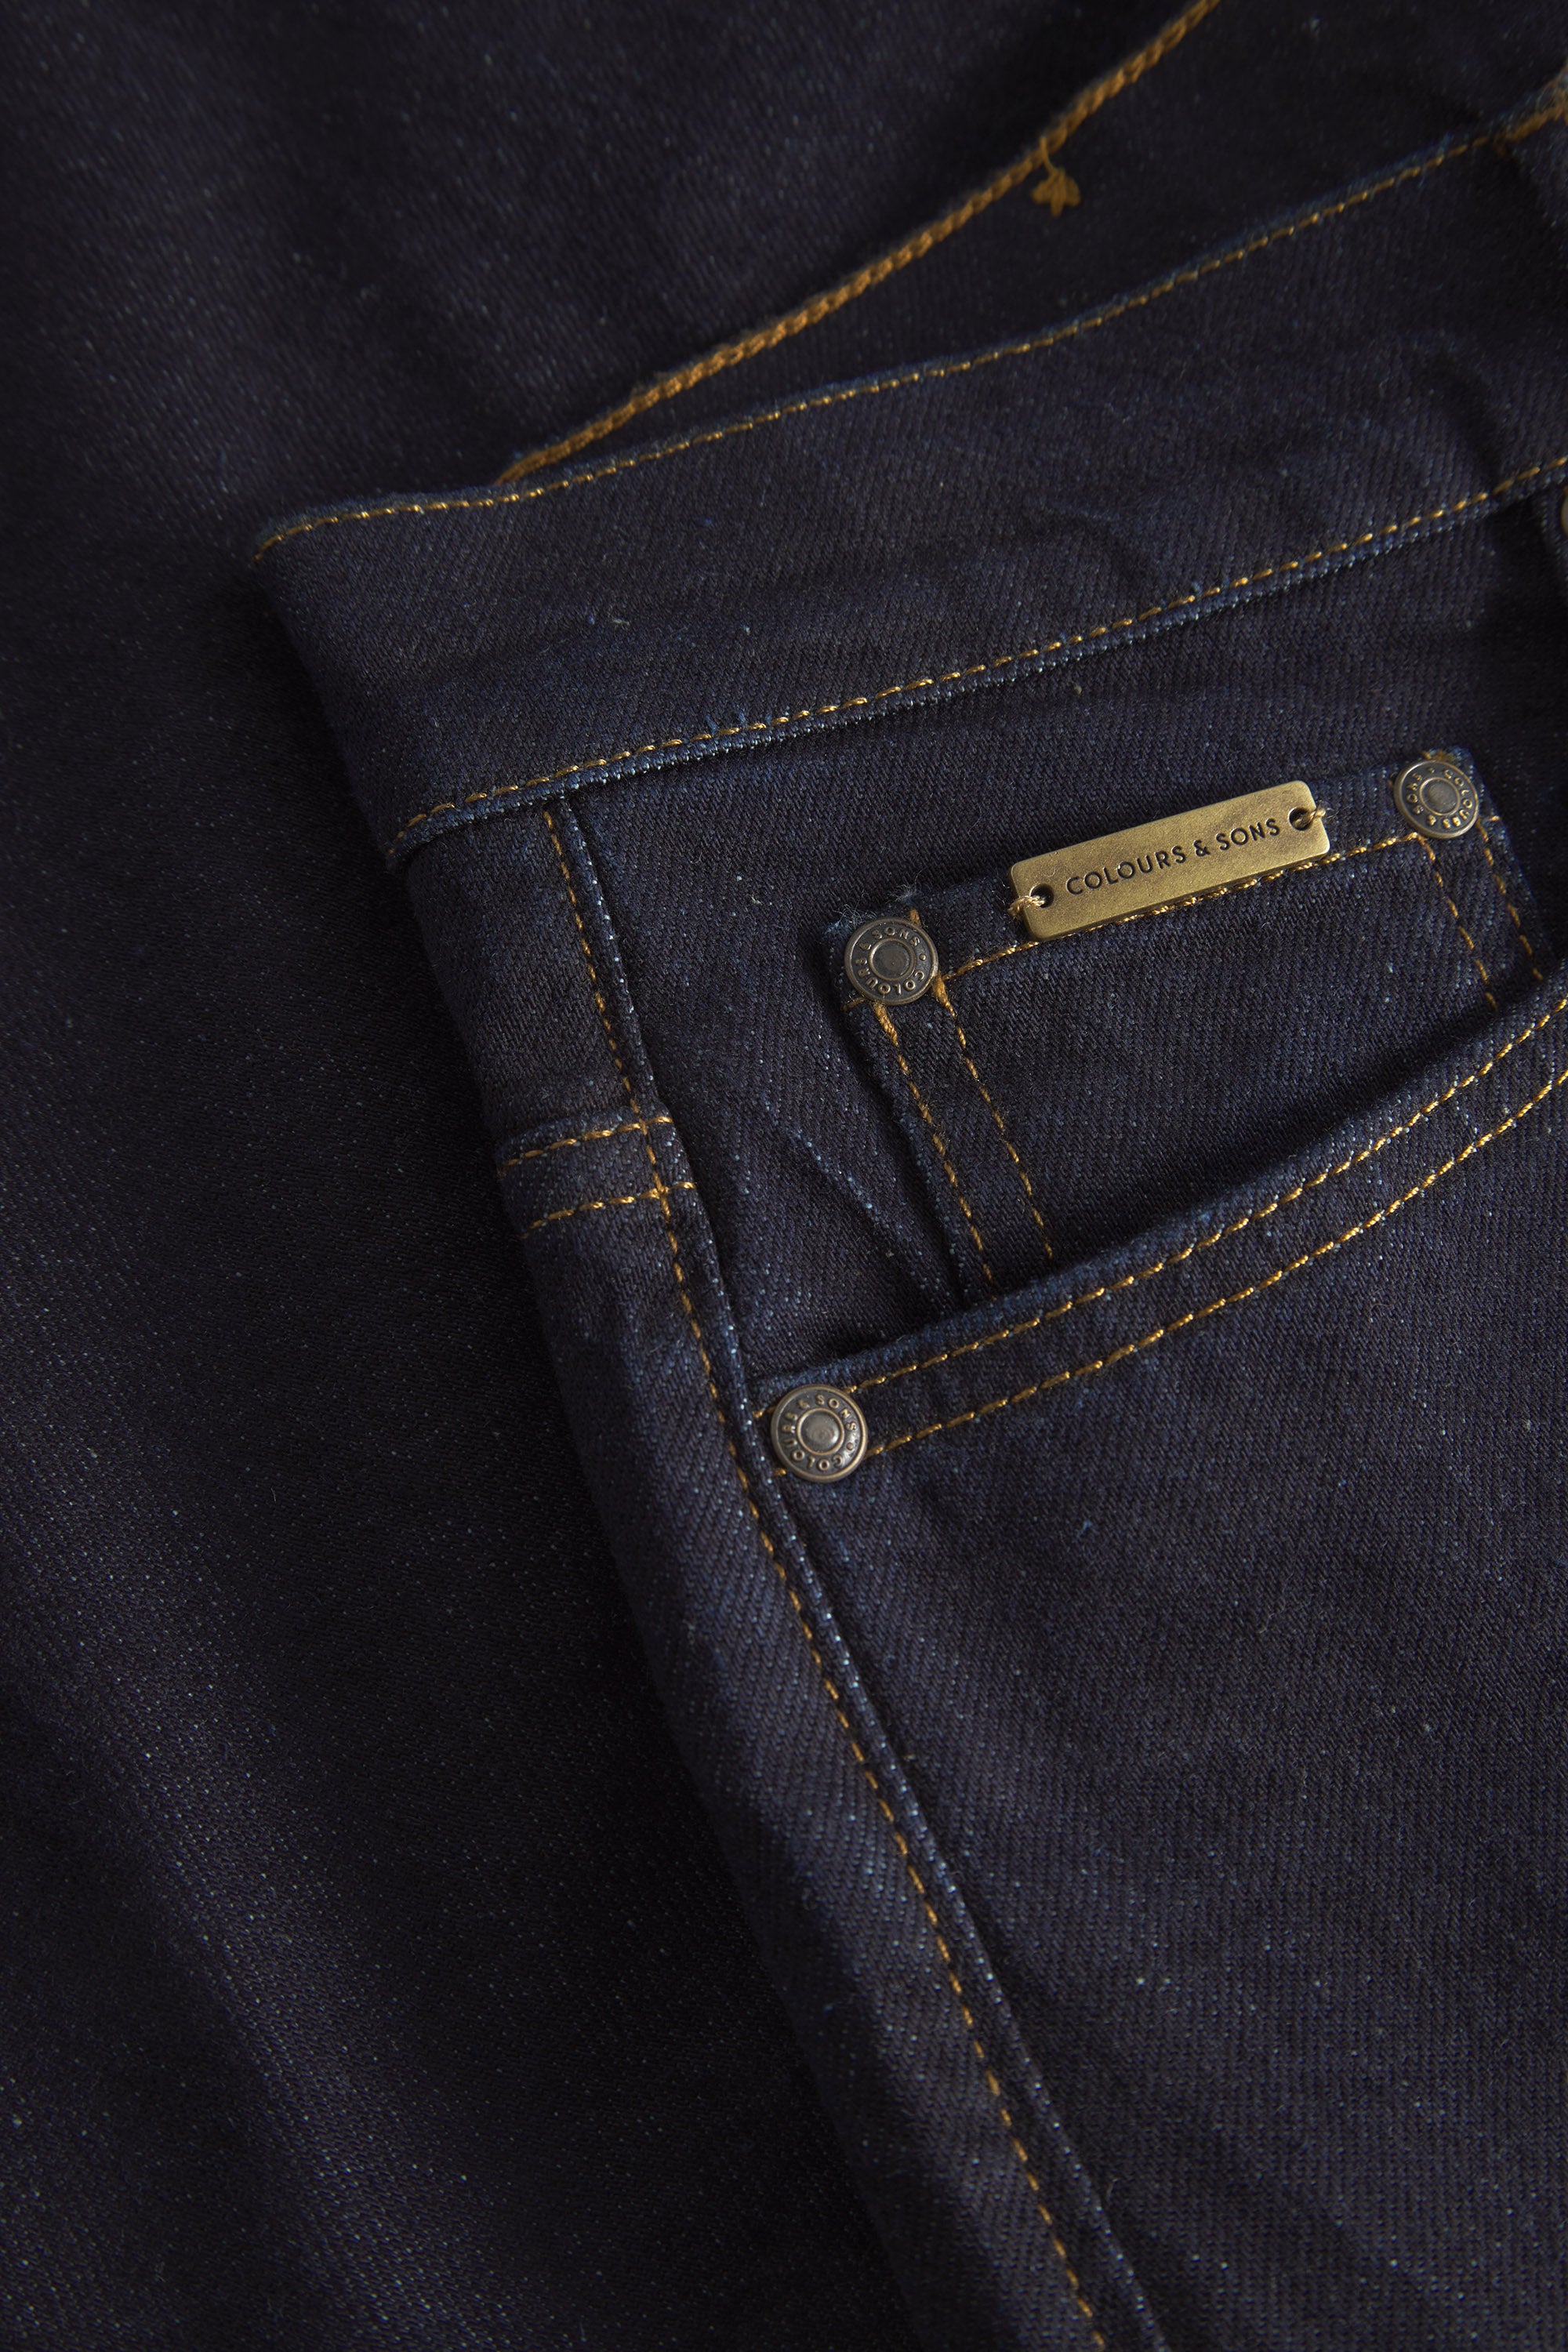 Herren Jeans, dunkelblau, 77% Baumwolle 22% recycled Baumwolle 1% Elastan von Colours & Sons